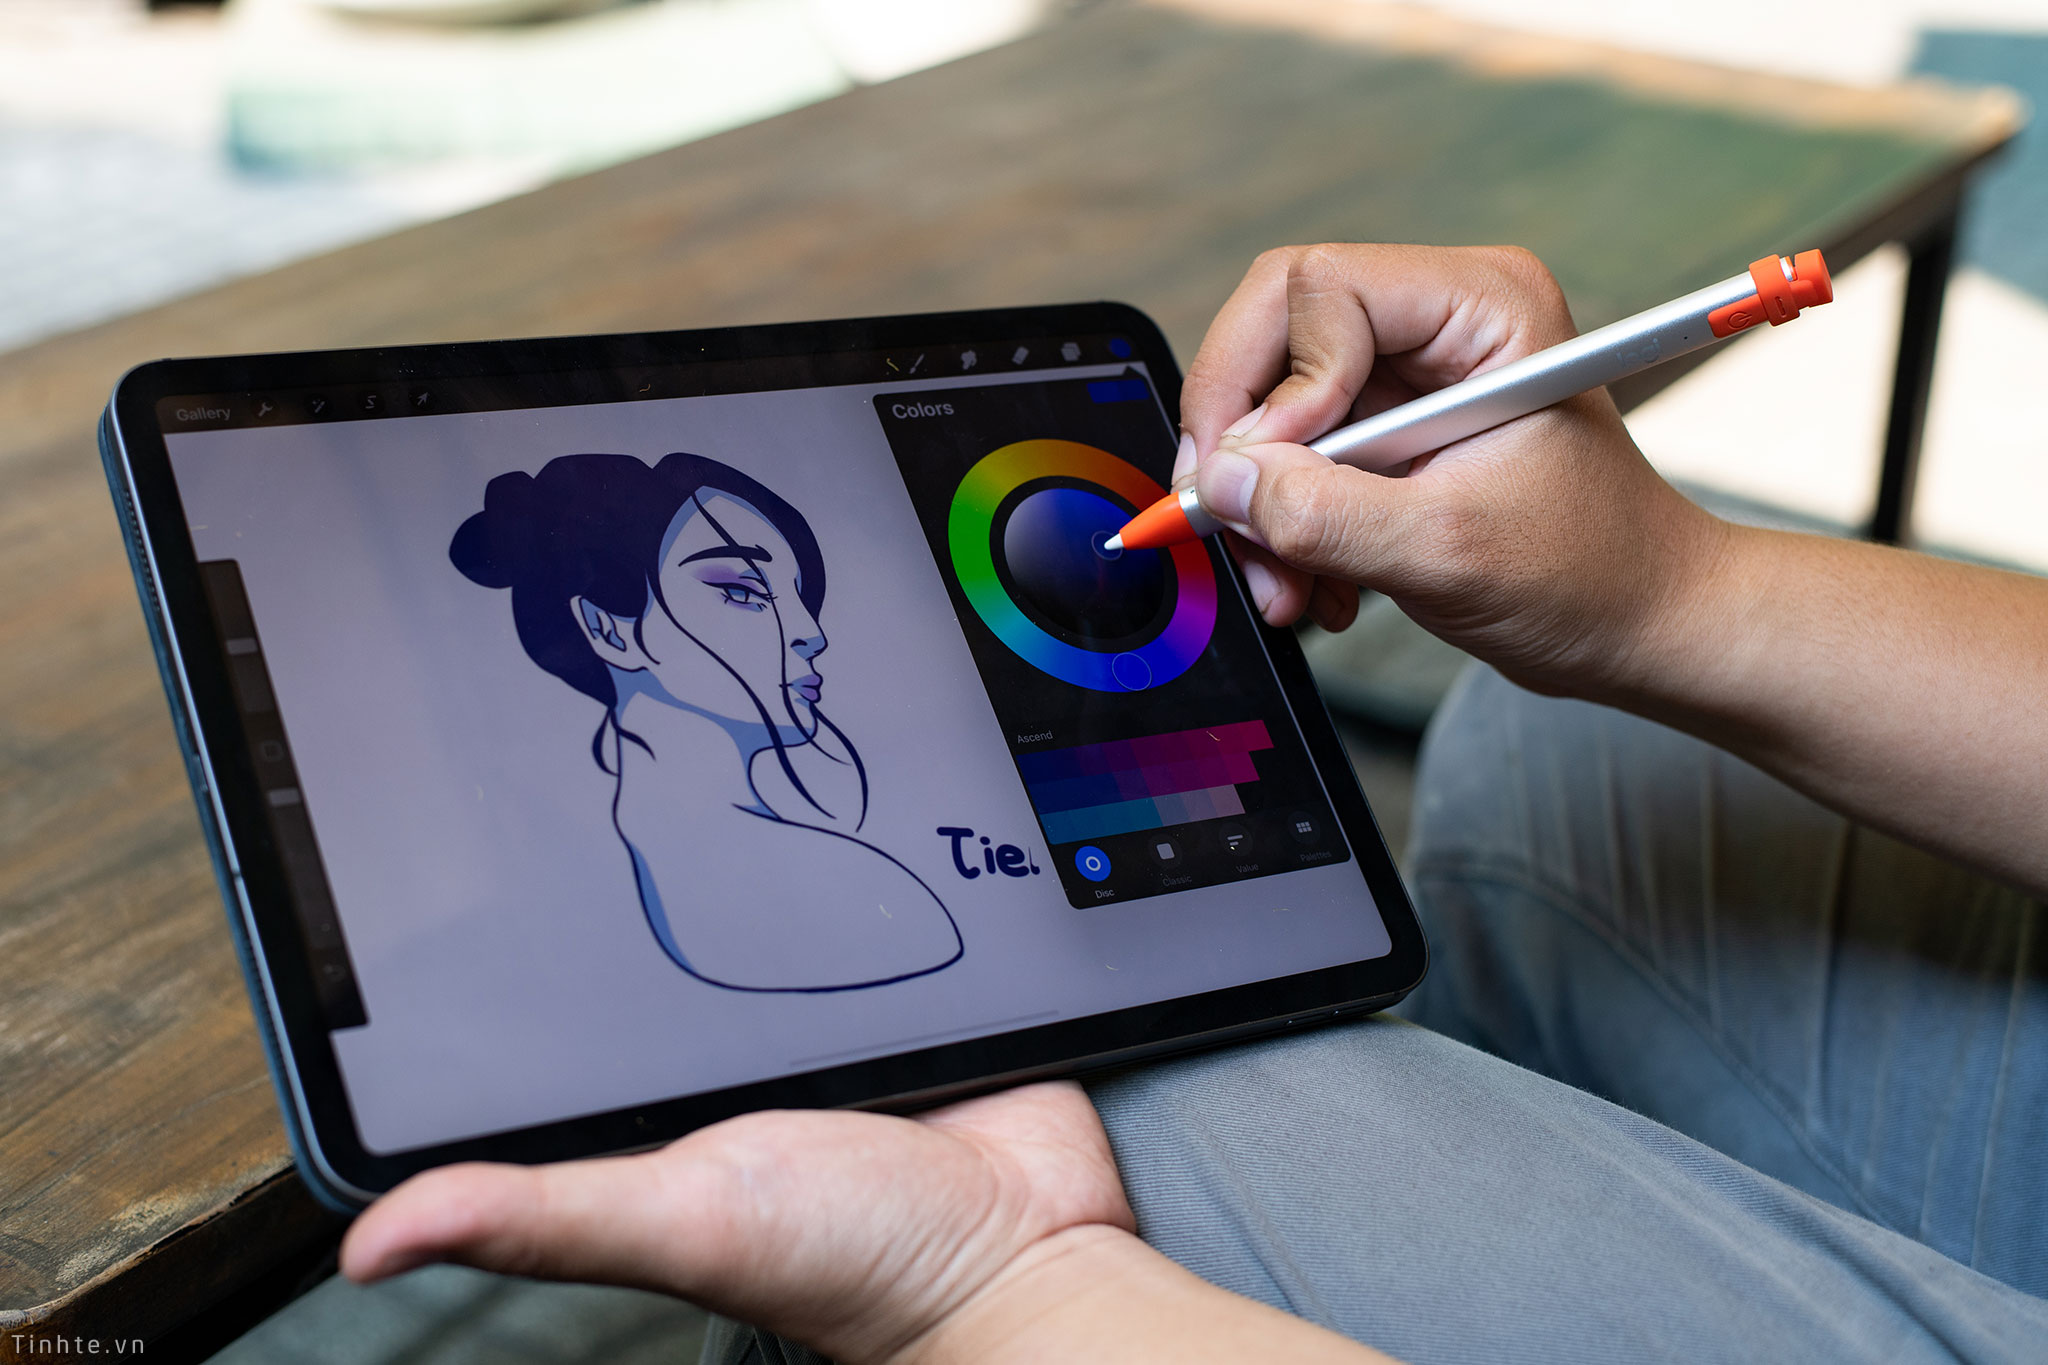 Bút cảm ứng Logitech Crayon là một sản phẩm mang lại nhiều lợi ích cho người dùng, đặc biệt là người yêu nghệ thuật và vẽ. Với thiết kế đơn giản, bút mang lại sự tiện lợi khi sử dụng và độ chính xác cao khi vẽ trên máy tính hay iPad. Sản phẩm này được đánh giá cao về tính năng và tính hiệu quả.